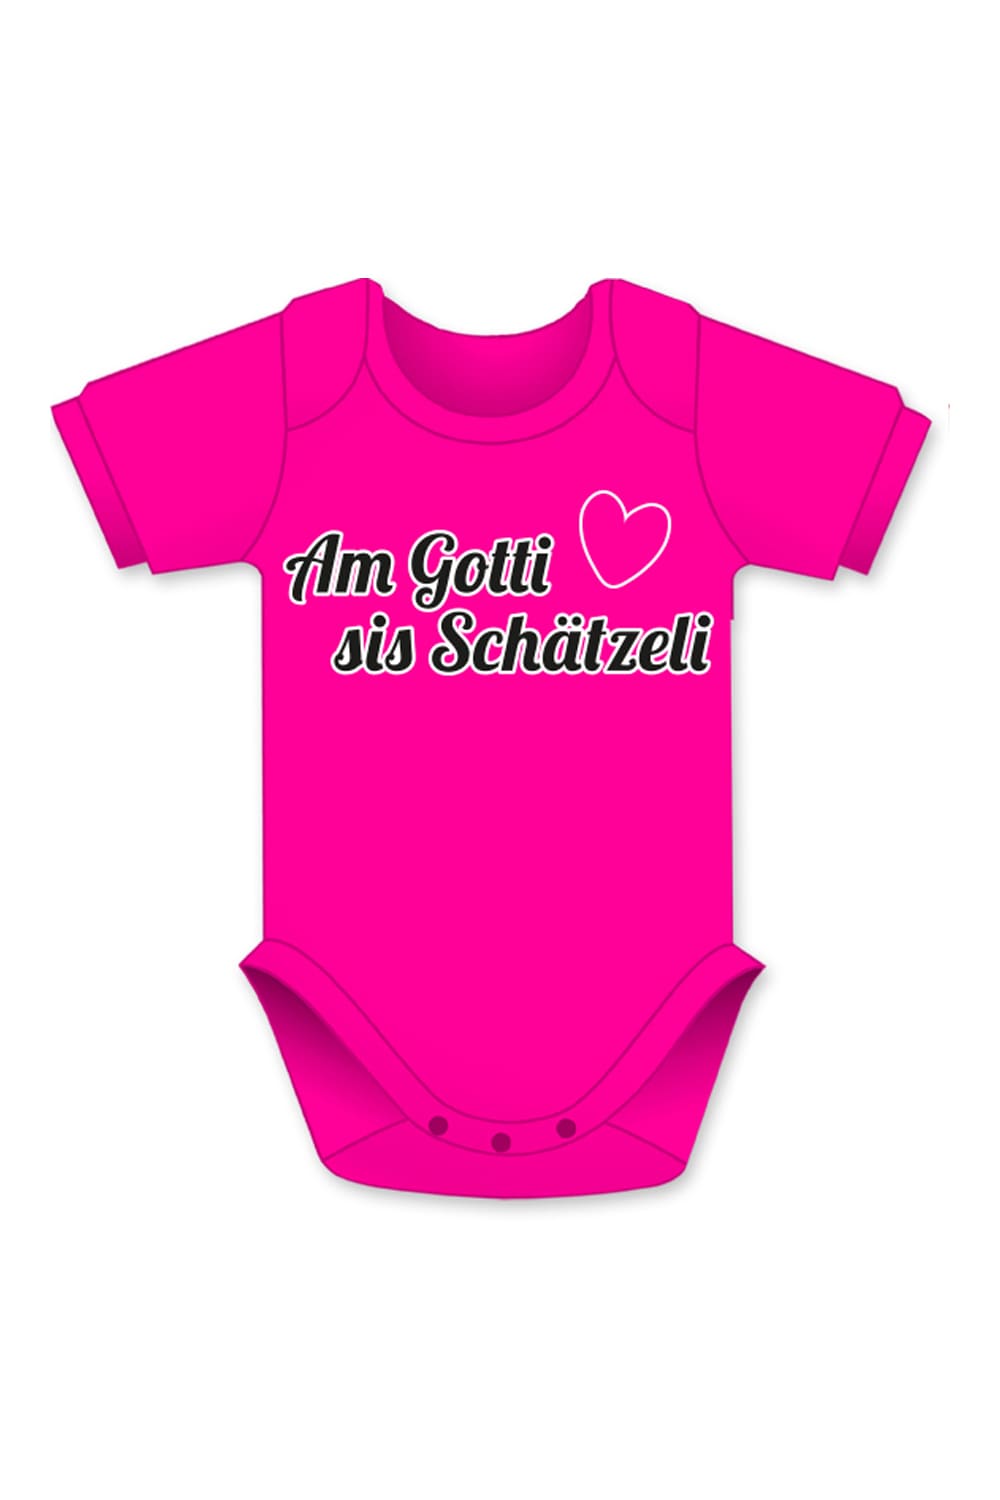 Schaetzeli Baby Body in der Farbe pink.